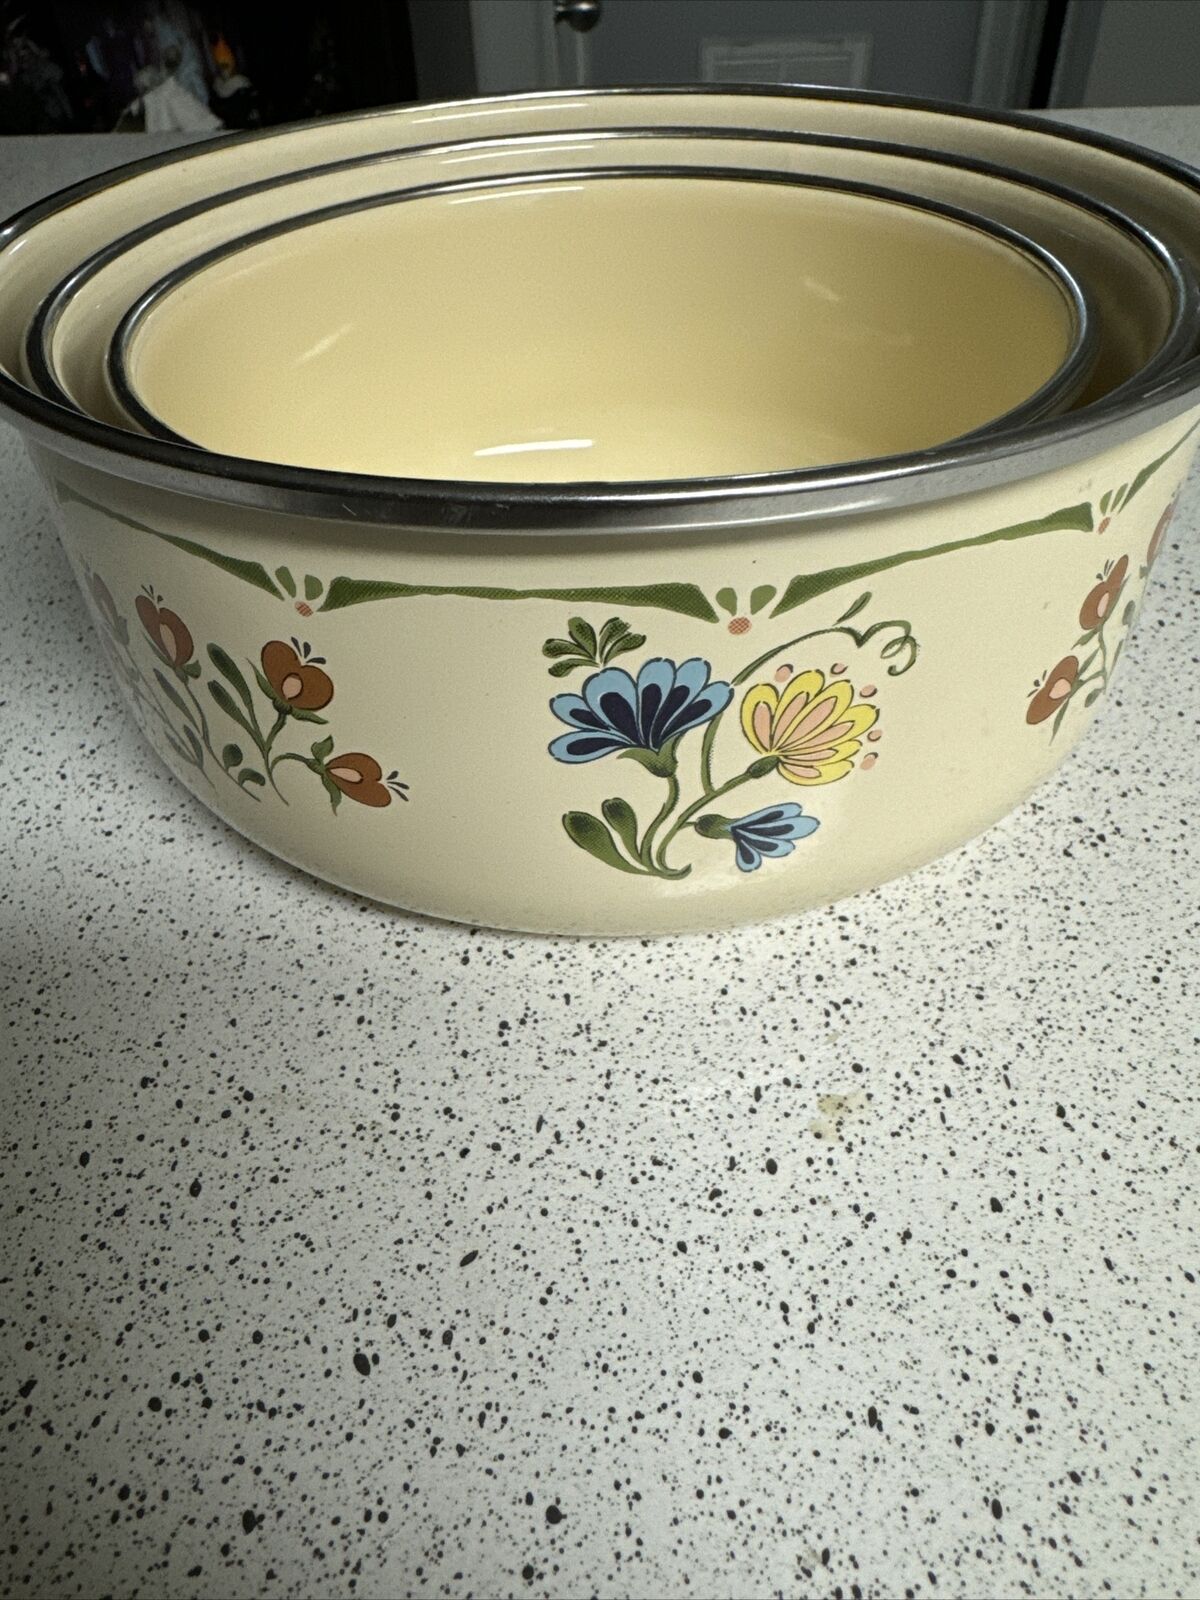 Vintage KOBE Nesting Bowls Set of 3 Porcelain Enamel on Steel (No Lids) FLORAL